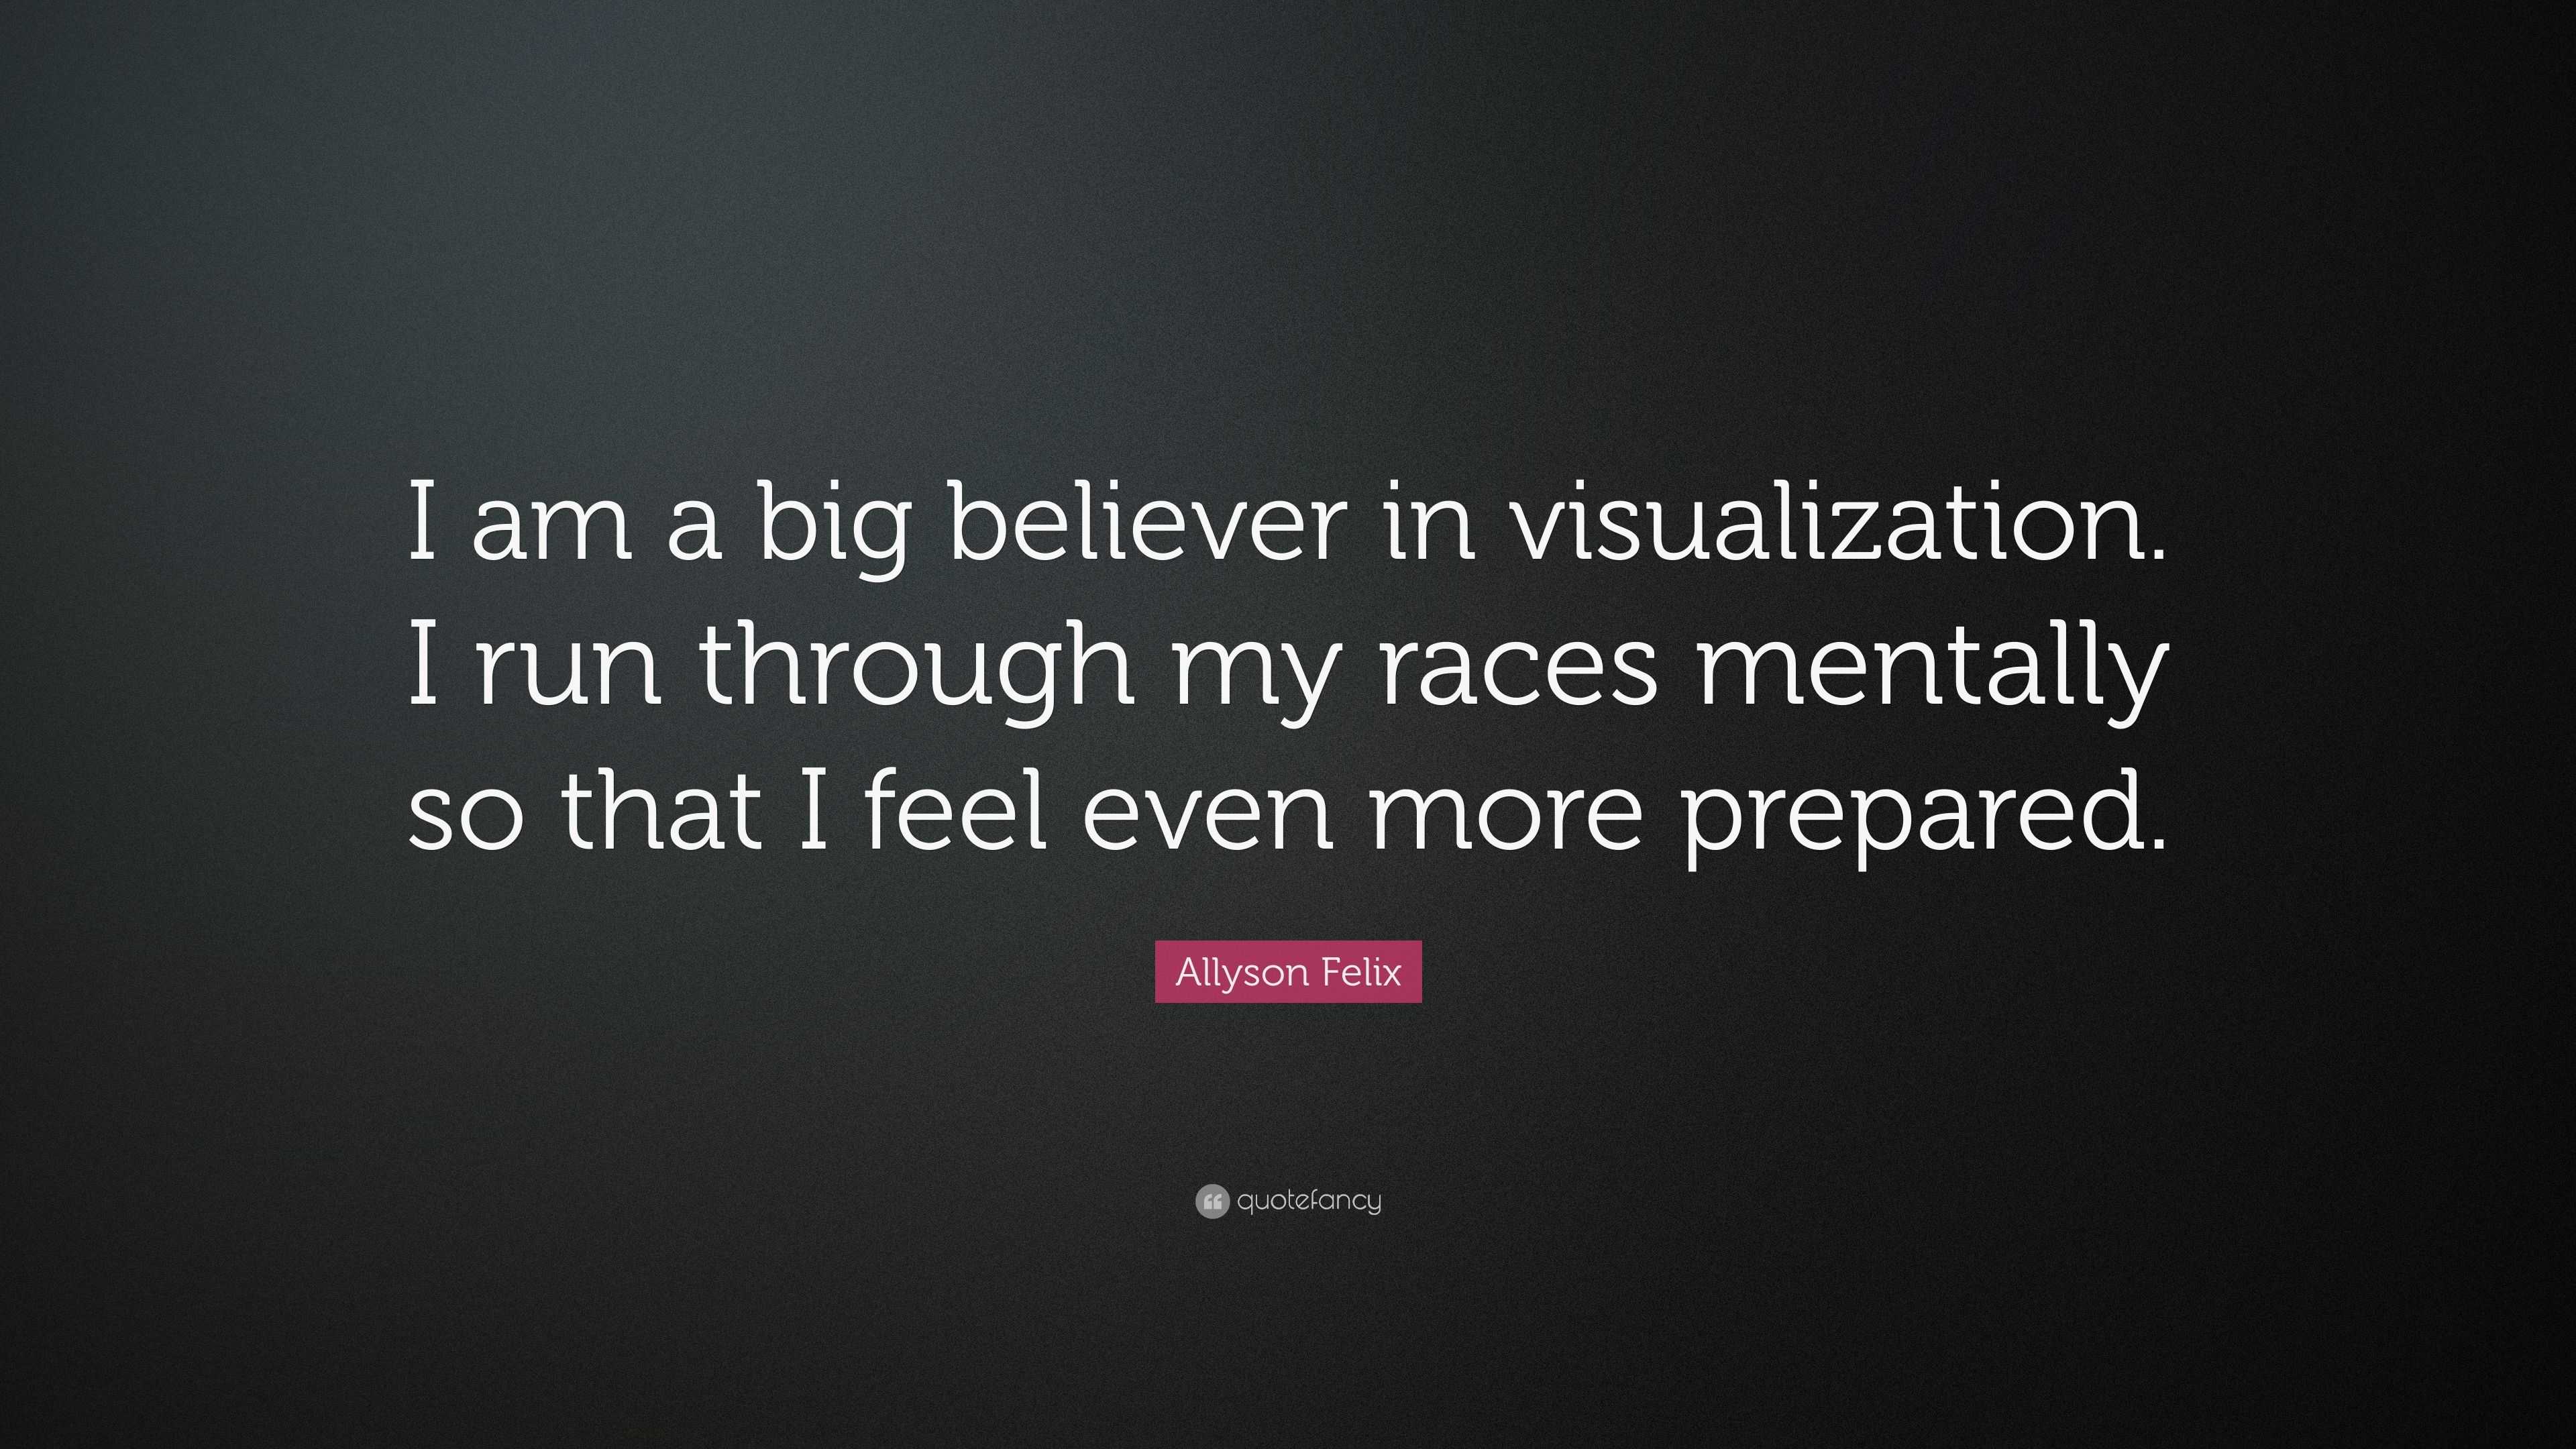 Allyson Felix Quote: “I am a big believer in visualization. I run ...